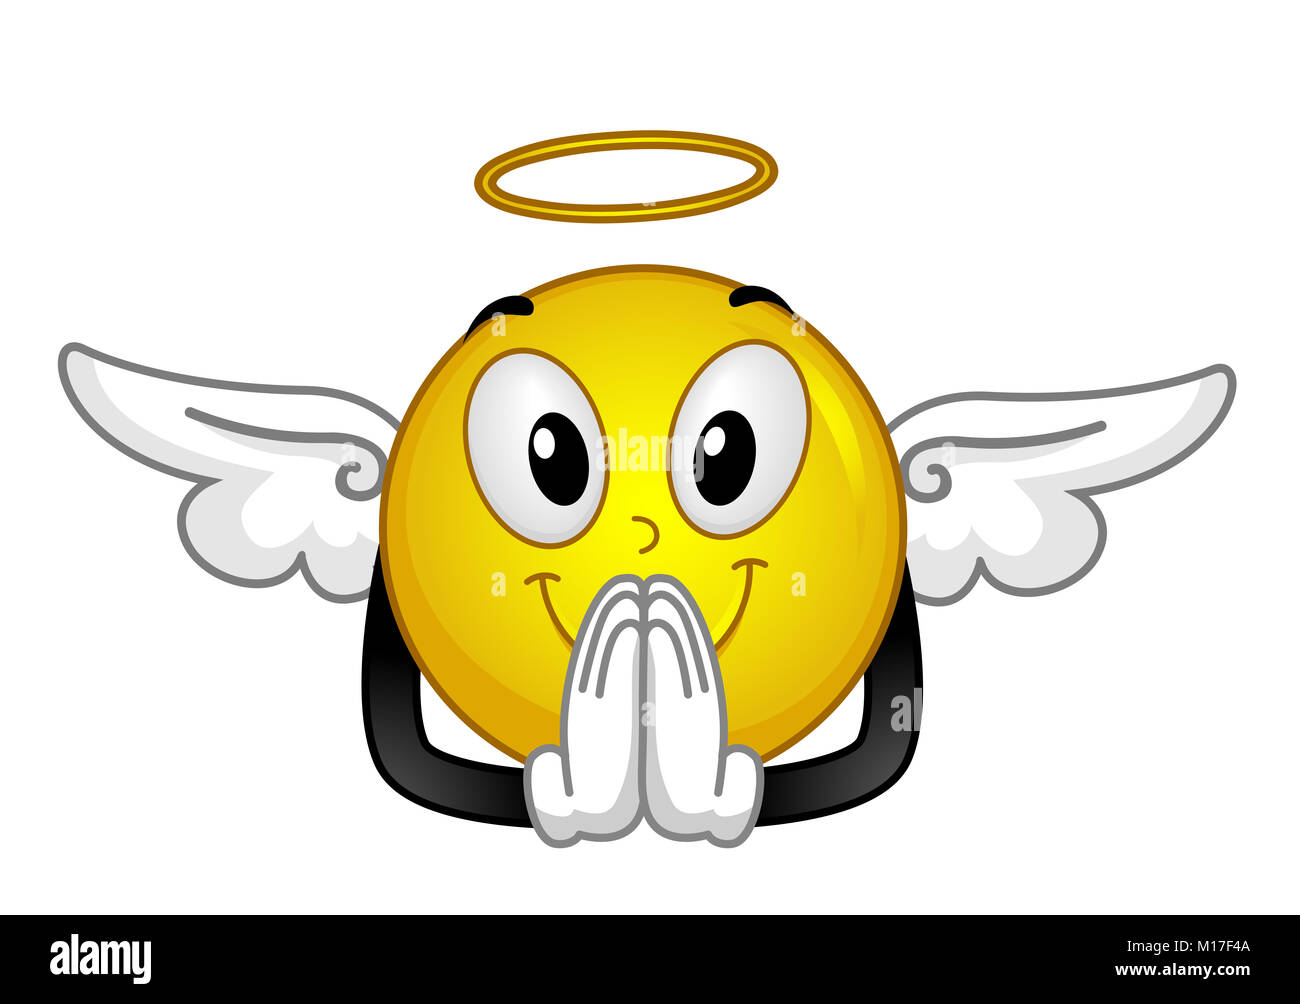 Abbildung Ein Engel Smiley Mit Einem Heiligenschein Und Flügel Beten Stockfotografie Alamy